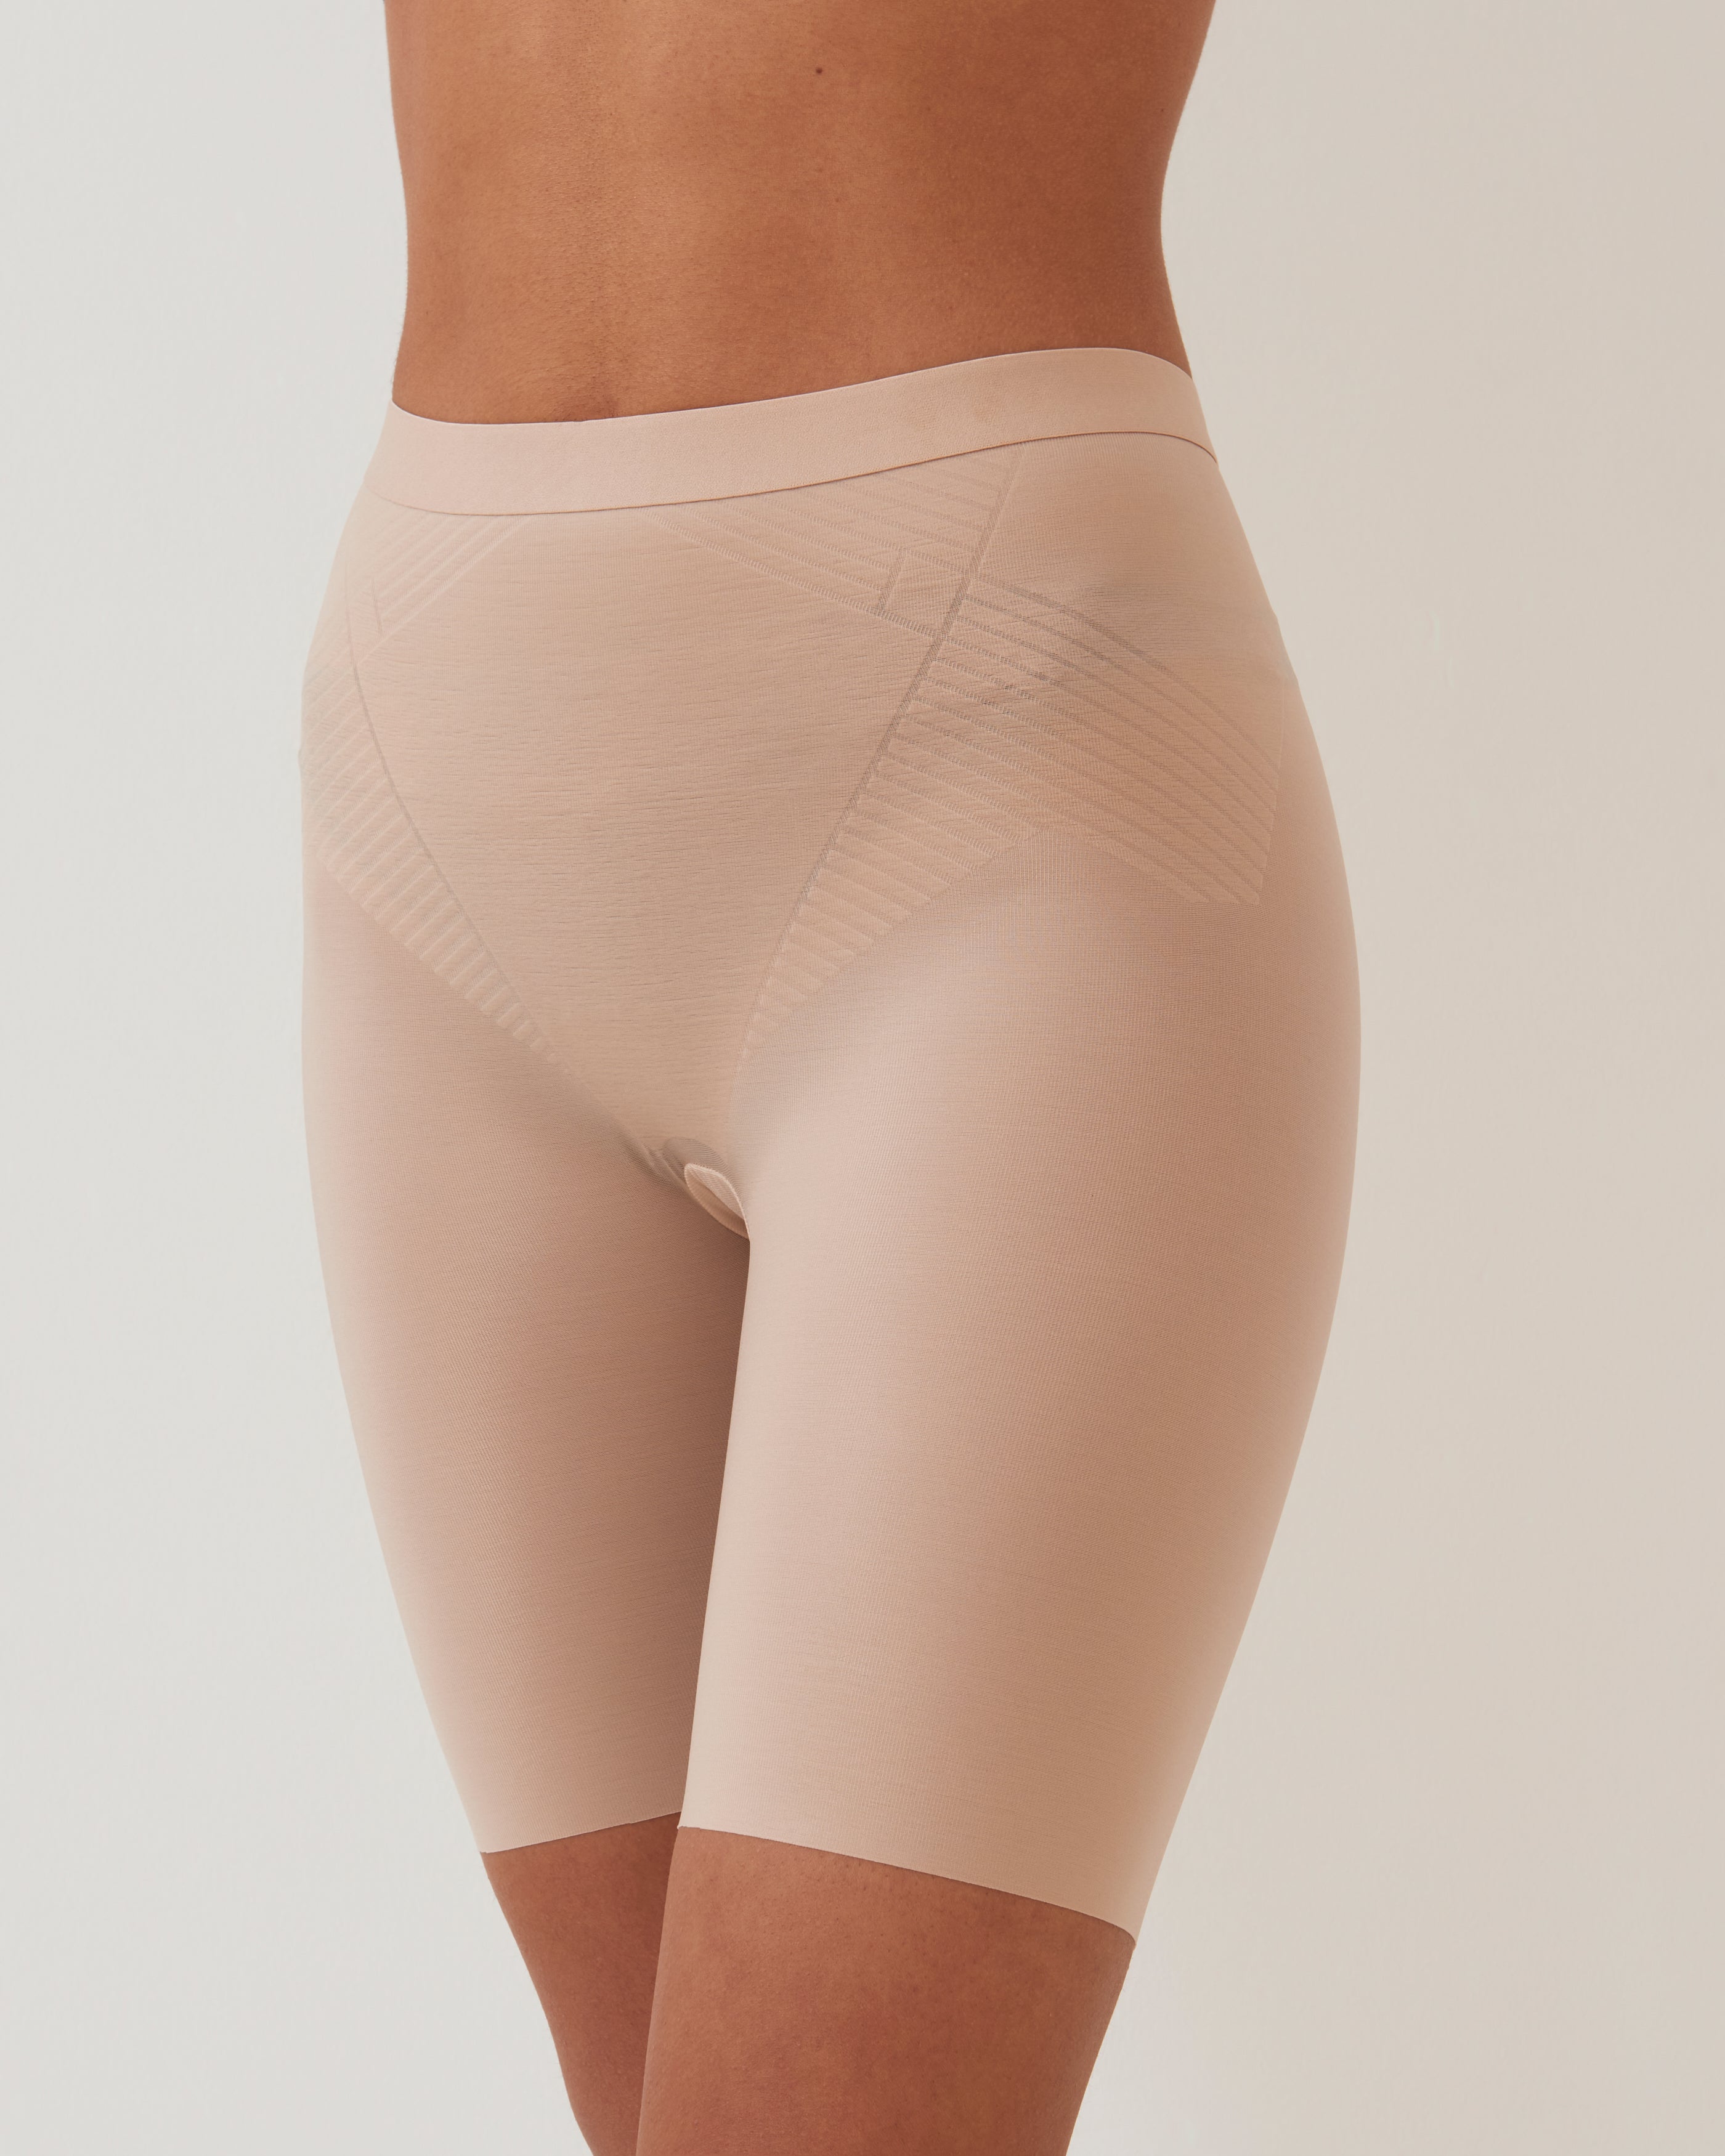 Beige Slimming Pants by SPANX